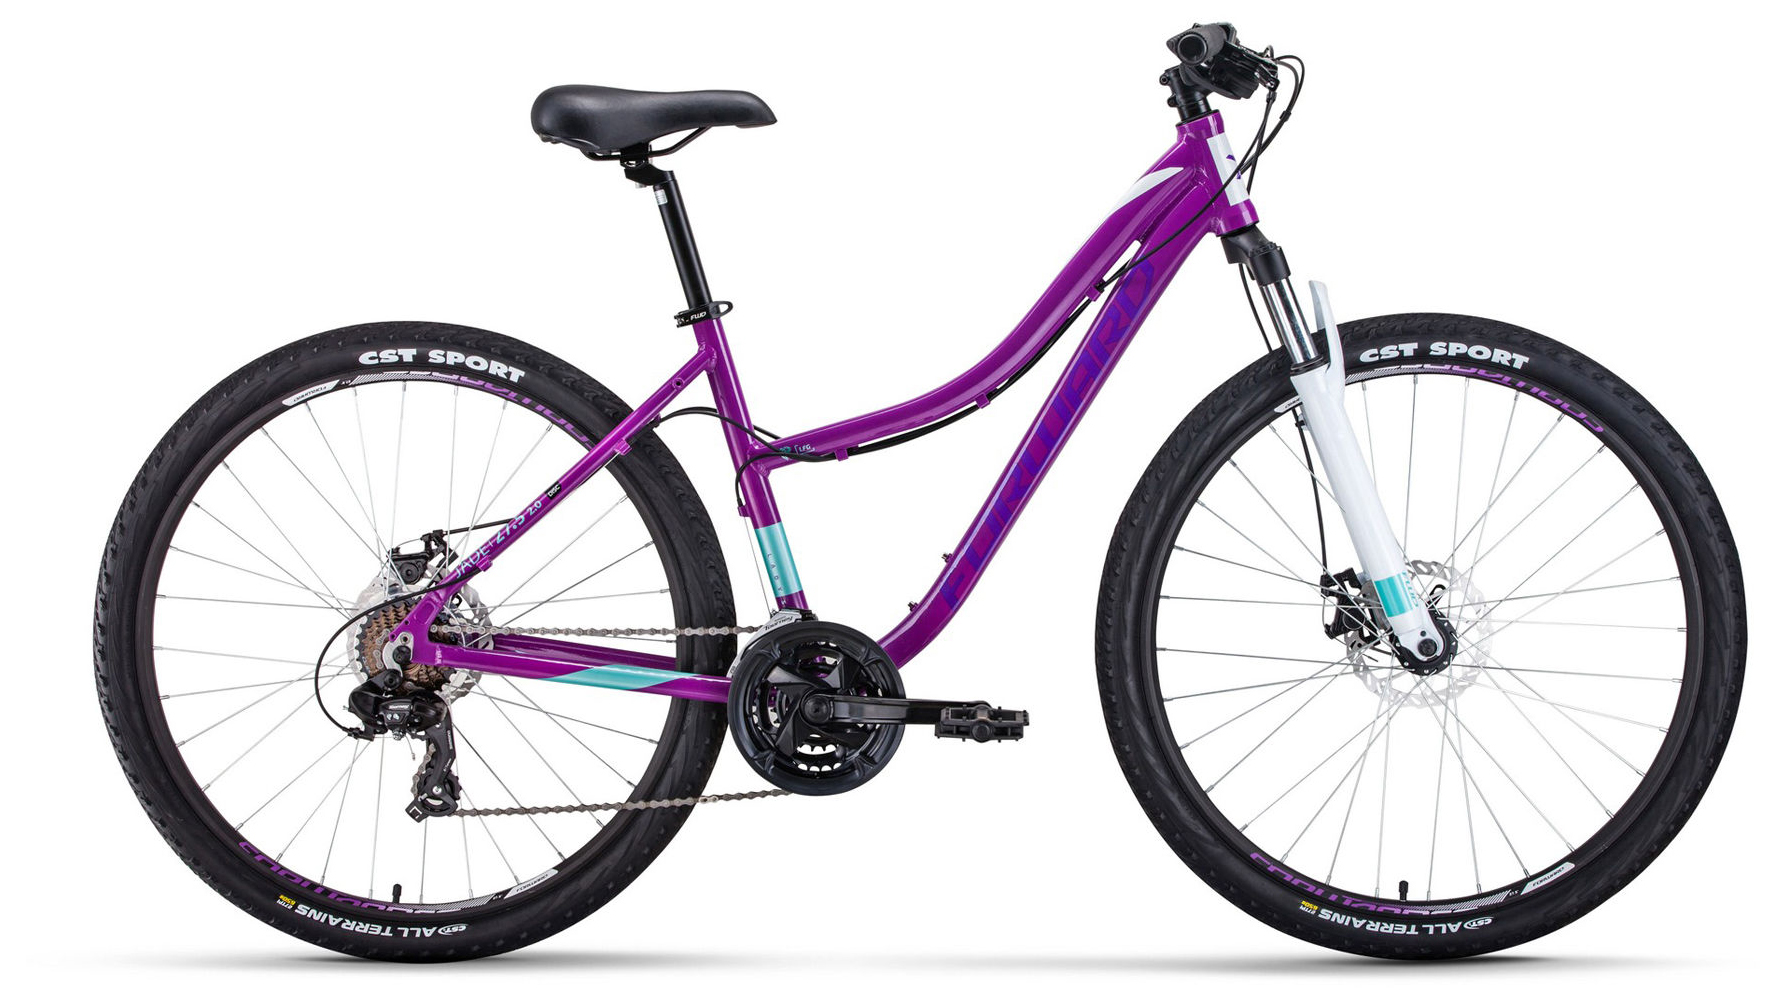  Отзывы о Женском велосипеде Forward Jade 27.5 2.0 Disc 2020